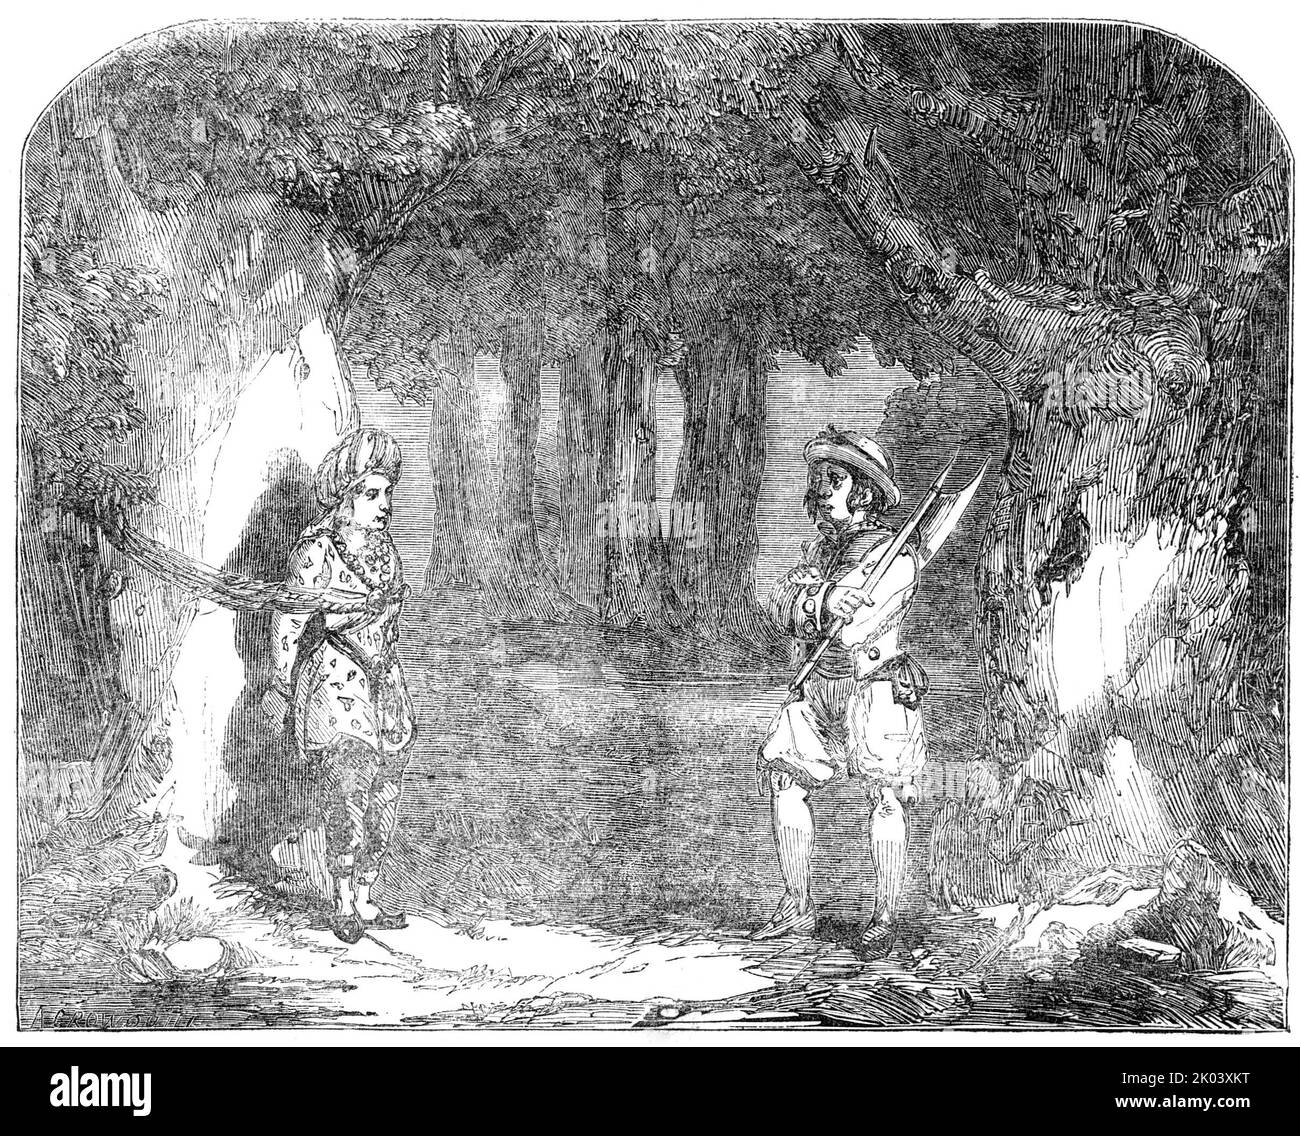 Haymarket - Szene aus "The Second Calendar and the Queen of Beauty Who had to fight with the Genie", 1850. Londoner Bühnenproduktion der Brüder Brough. „Die Handlung... ist nicht nur der gefeierten Geschichte entnommen, deren Namen sie trägt, Aber auch aus einer anderen Geschichte im gleichen Werk, der gefeierten "Arabian Nights' Entertainment", die beiden Geschichten sind sehr genial taubenschwanz...die einleitende Szene ist ein Picknick in der Wüste, in dem der König der Ebony-Inseln (Mr. J. Bland) verursacht das Unwohl eines bösartigen Genies, Jargarhees (Mr E. Selby)...der Prinz Agib (Fräulein Anne Stockfoto